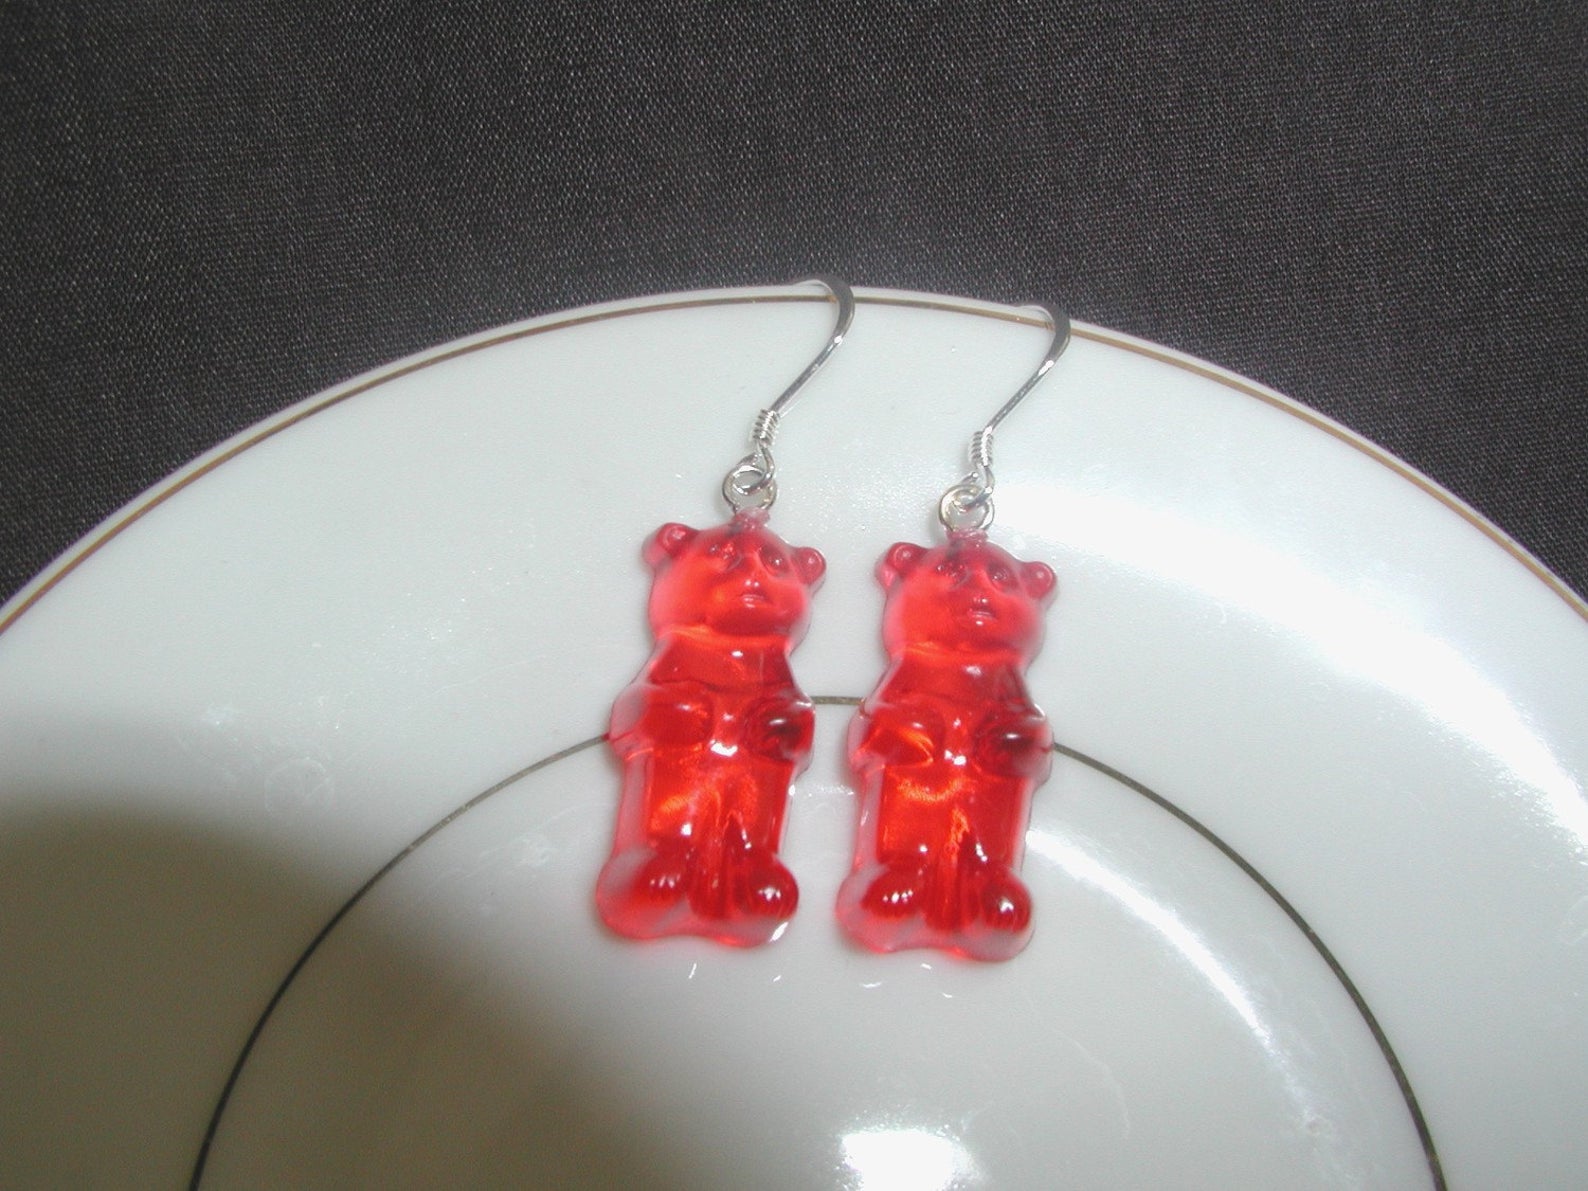 Gummy Bear earrings